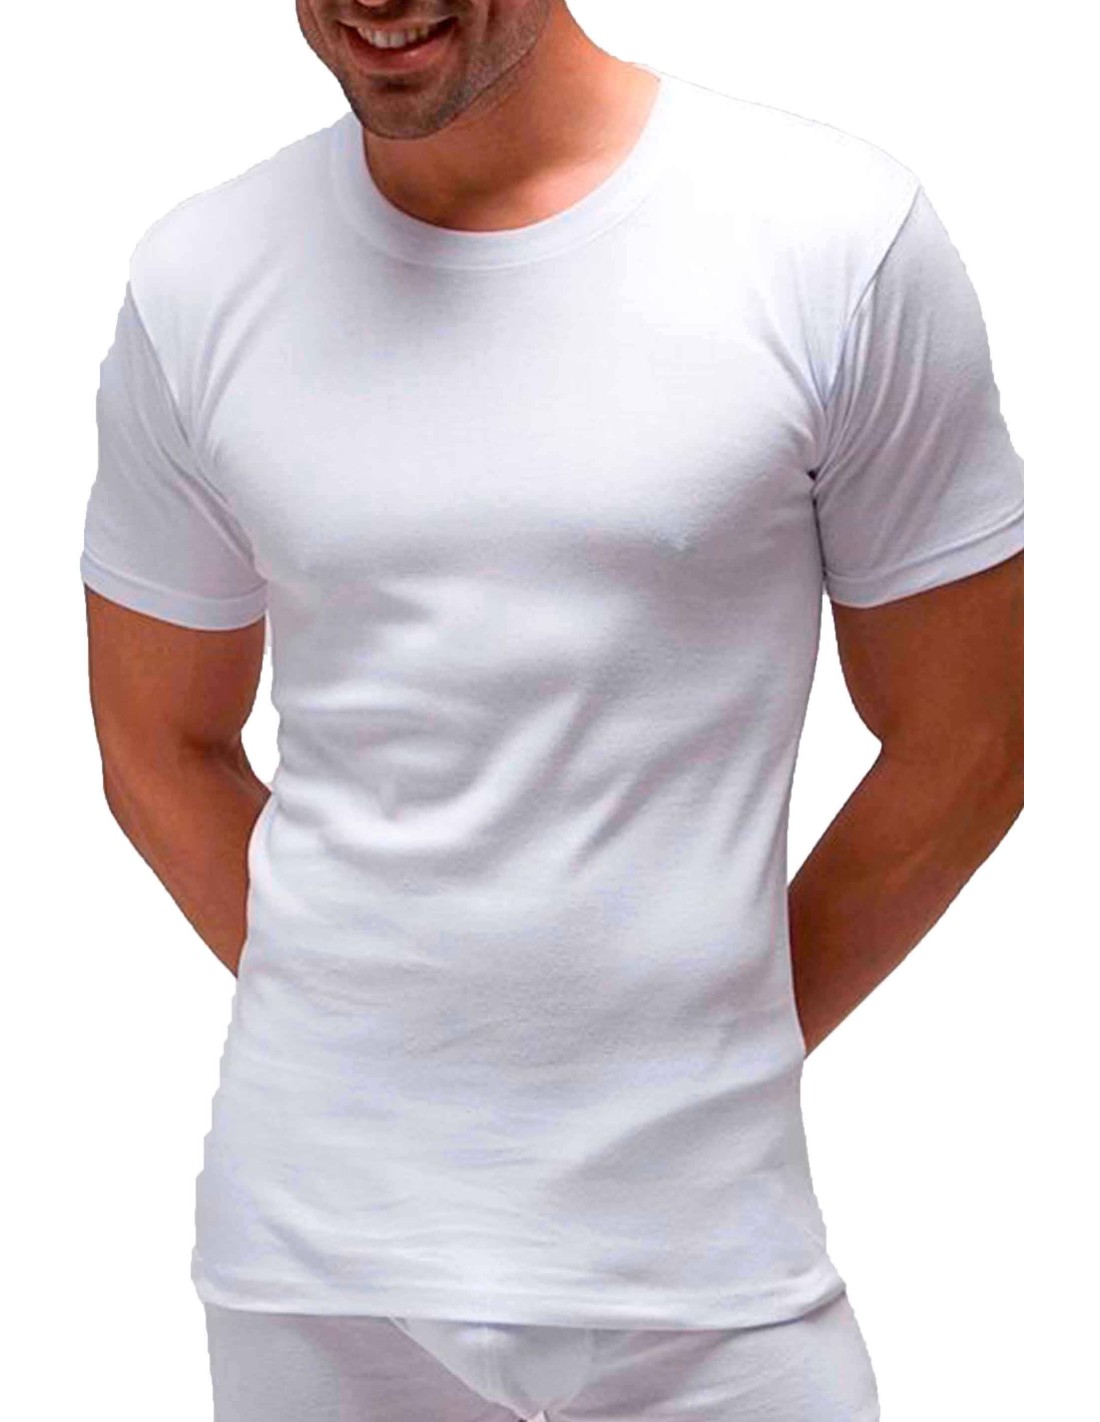 Camiseta Marca PL algodón básica manga corta hombre